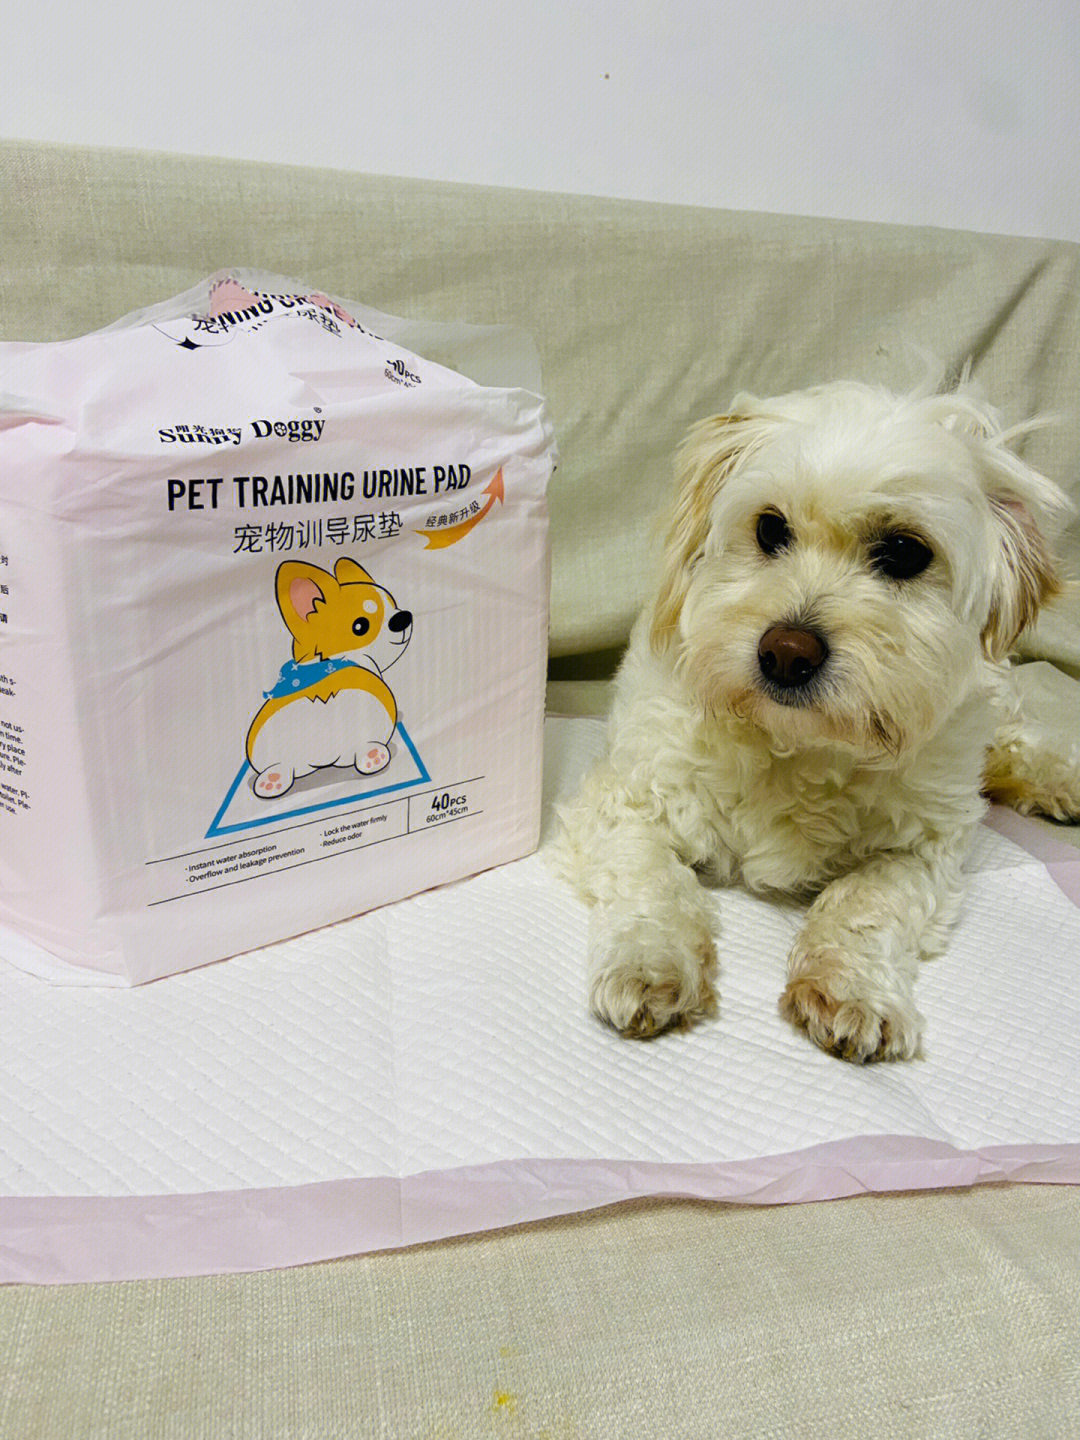 狗狗尿垫的正确垫法图片